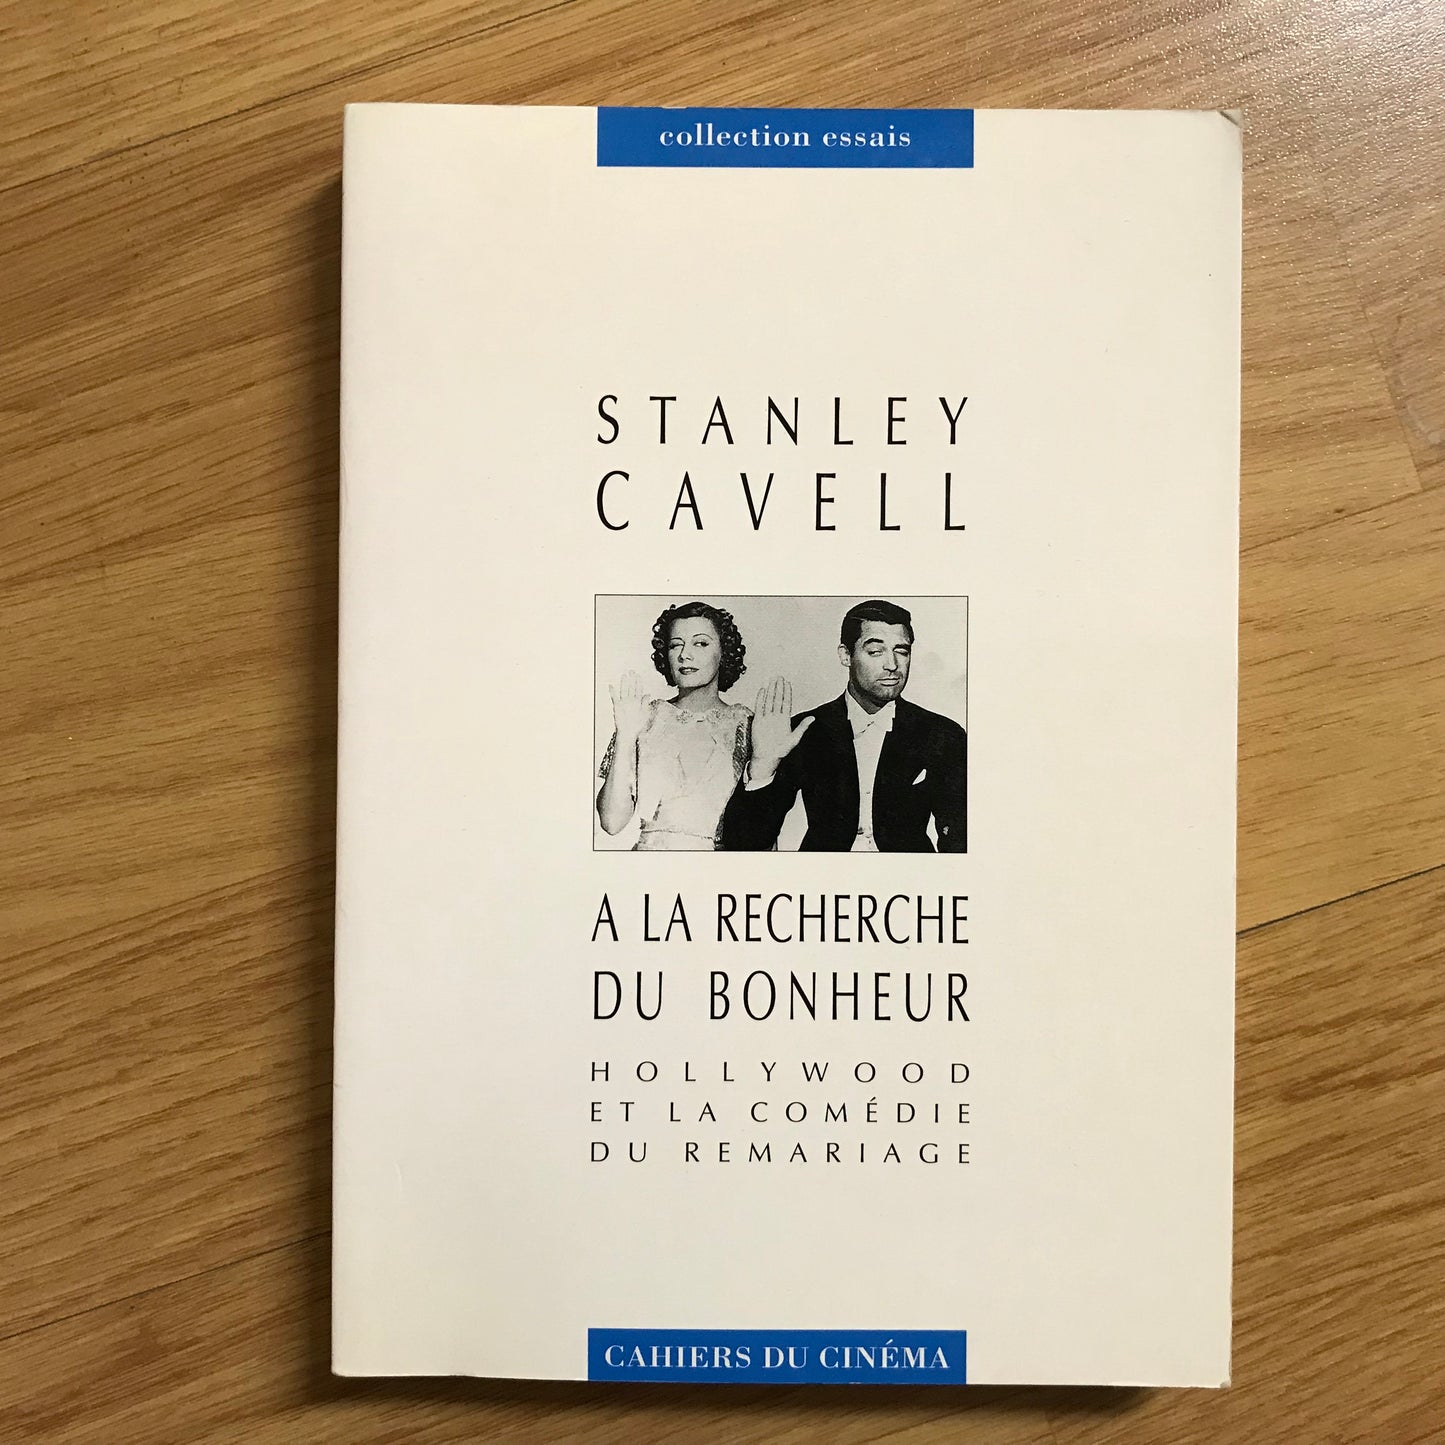 Cavell, Stanley - A la recherche du bonheur, Hollywood et la comédie du remariage